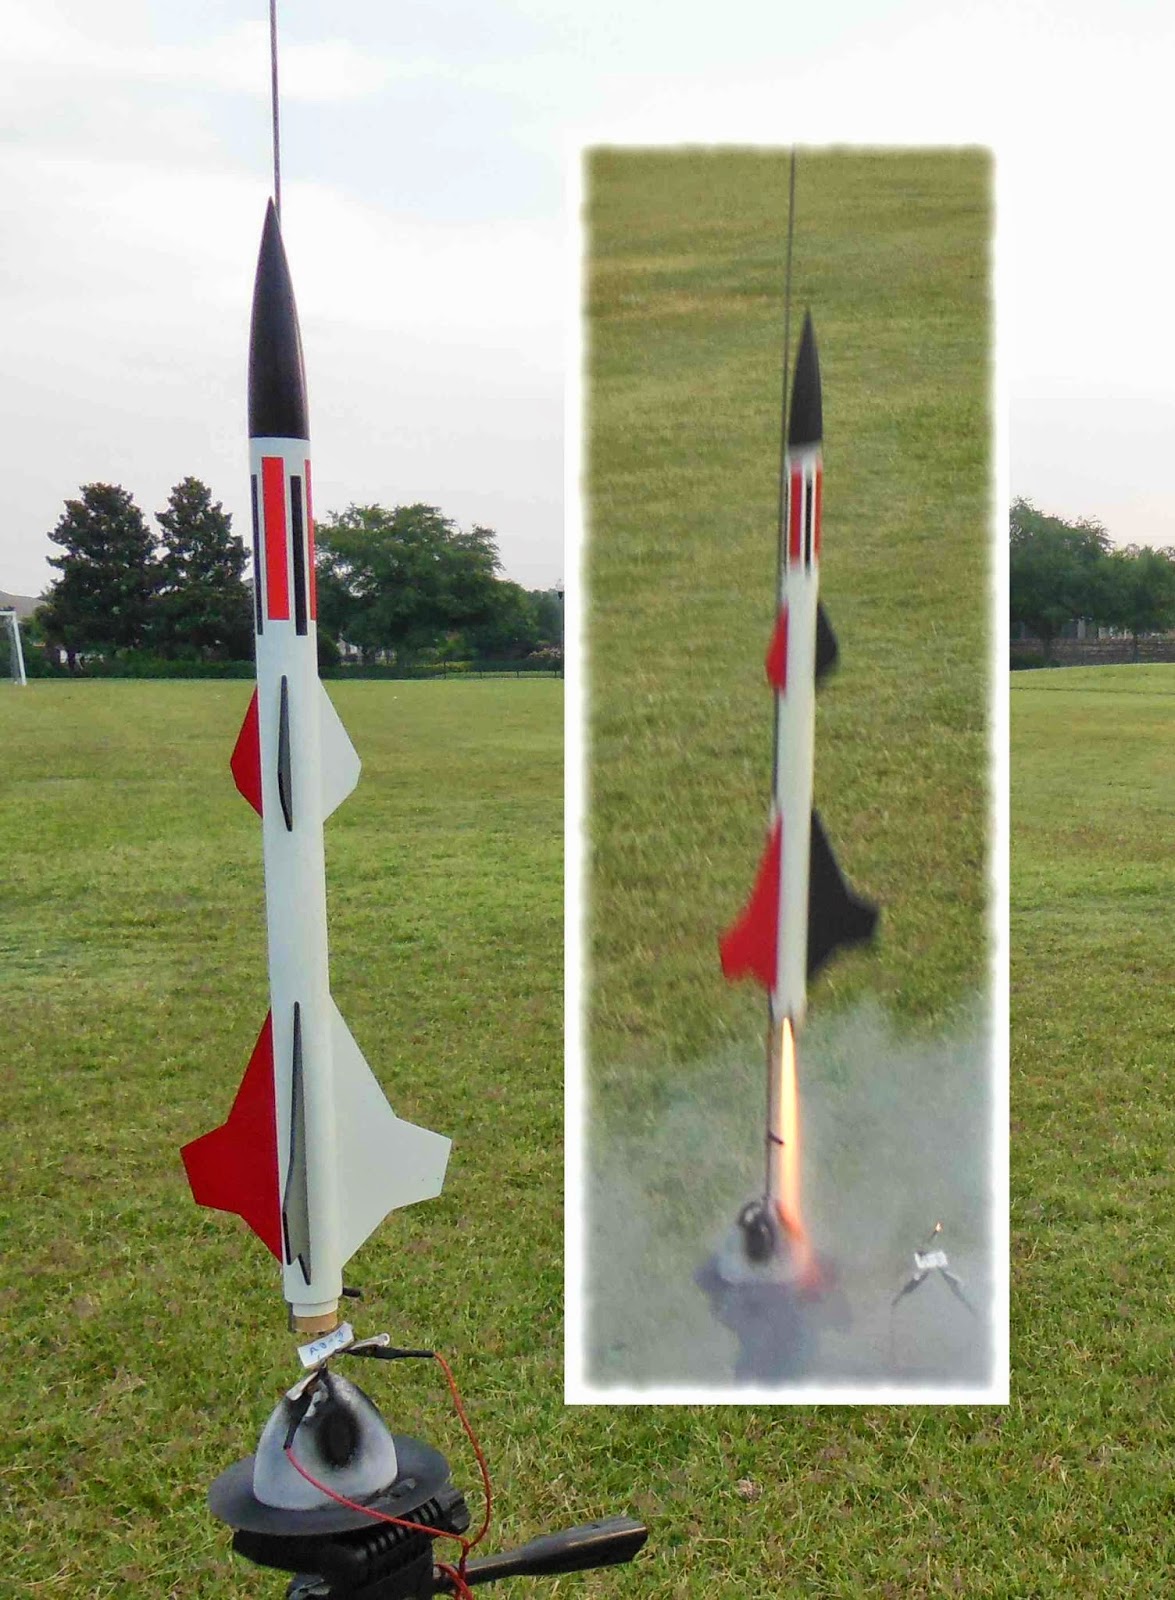 Model Rocket Building Launch Schoolyard May 25 2014